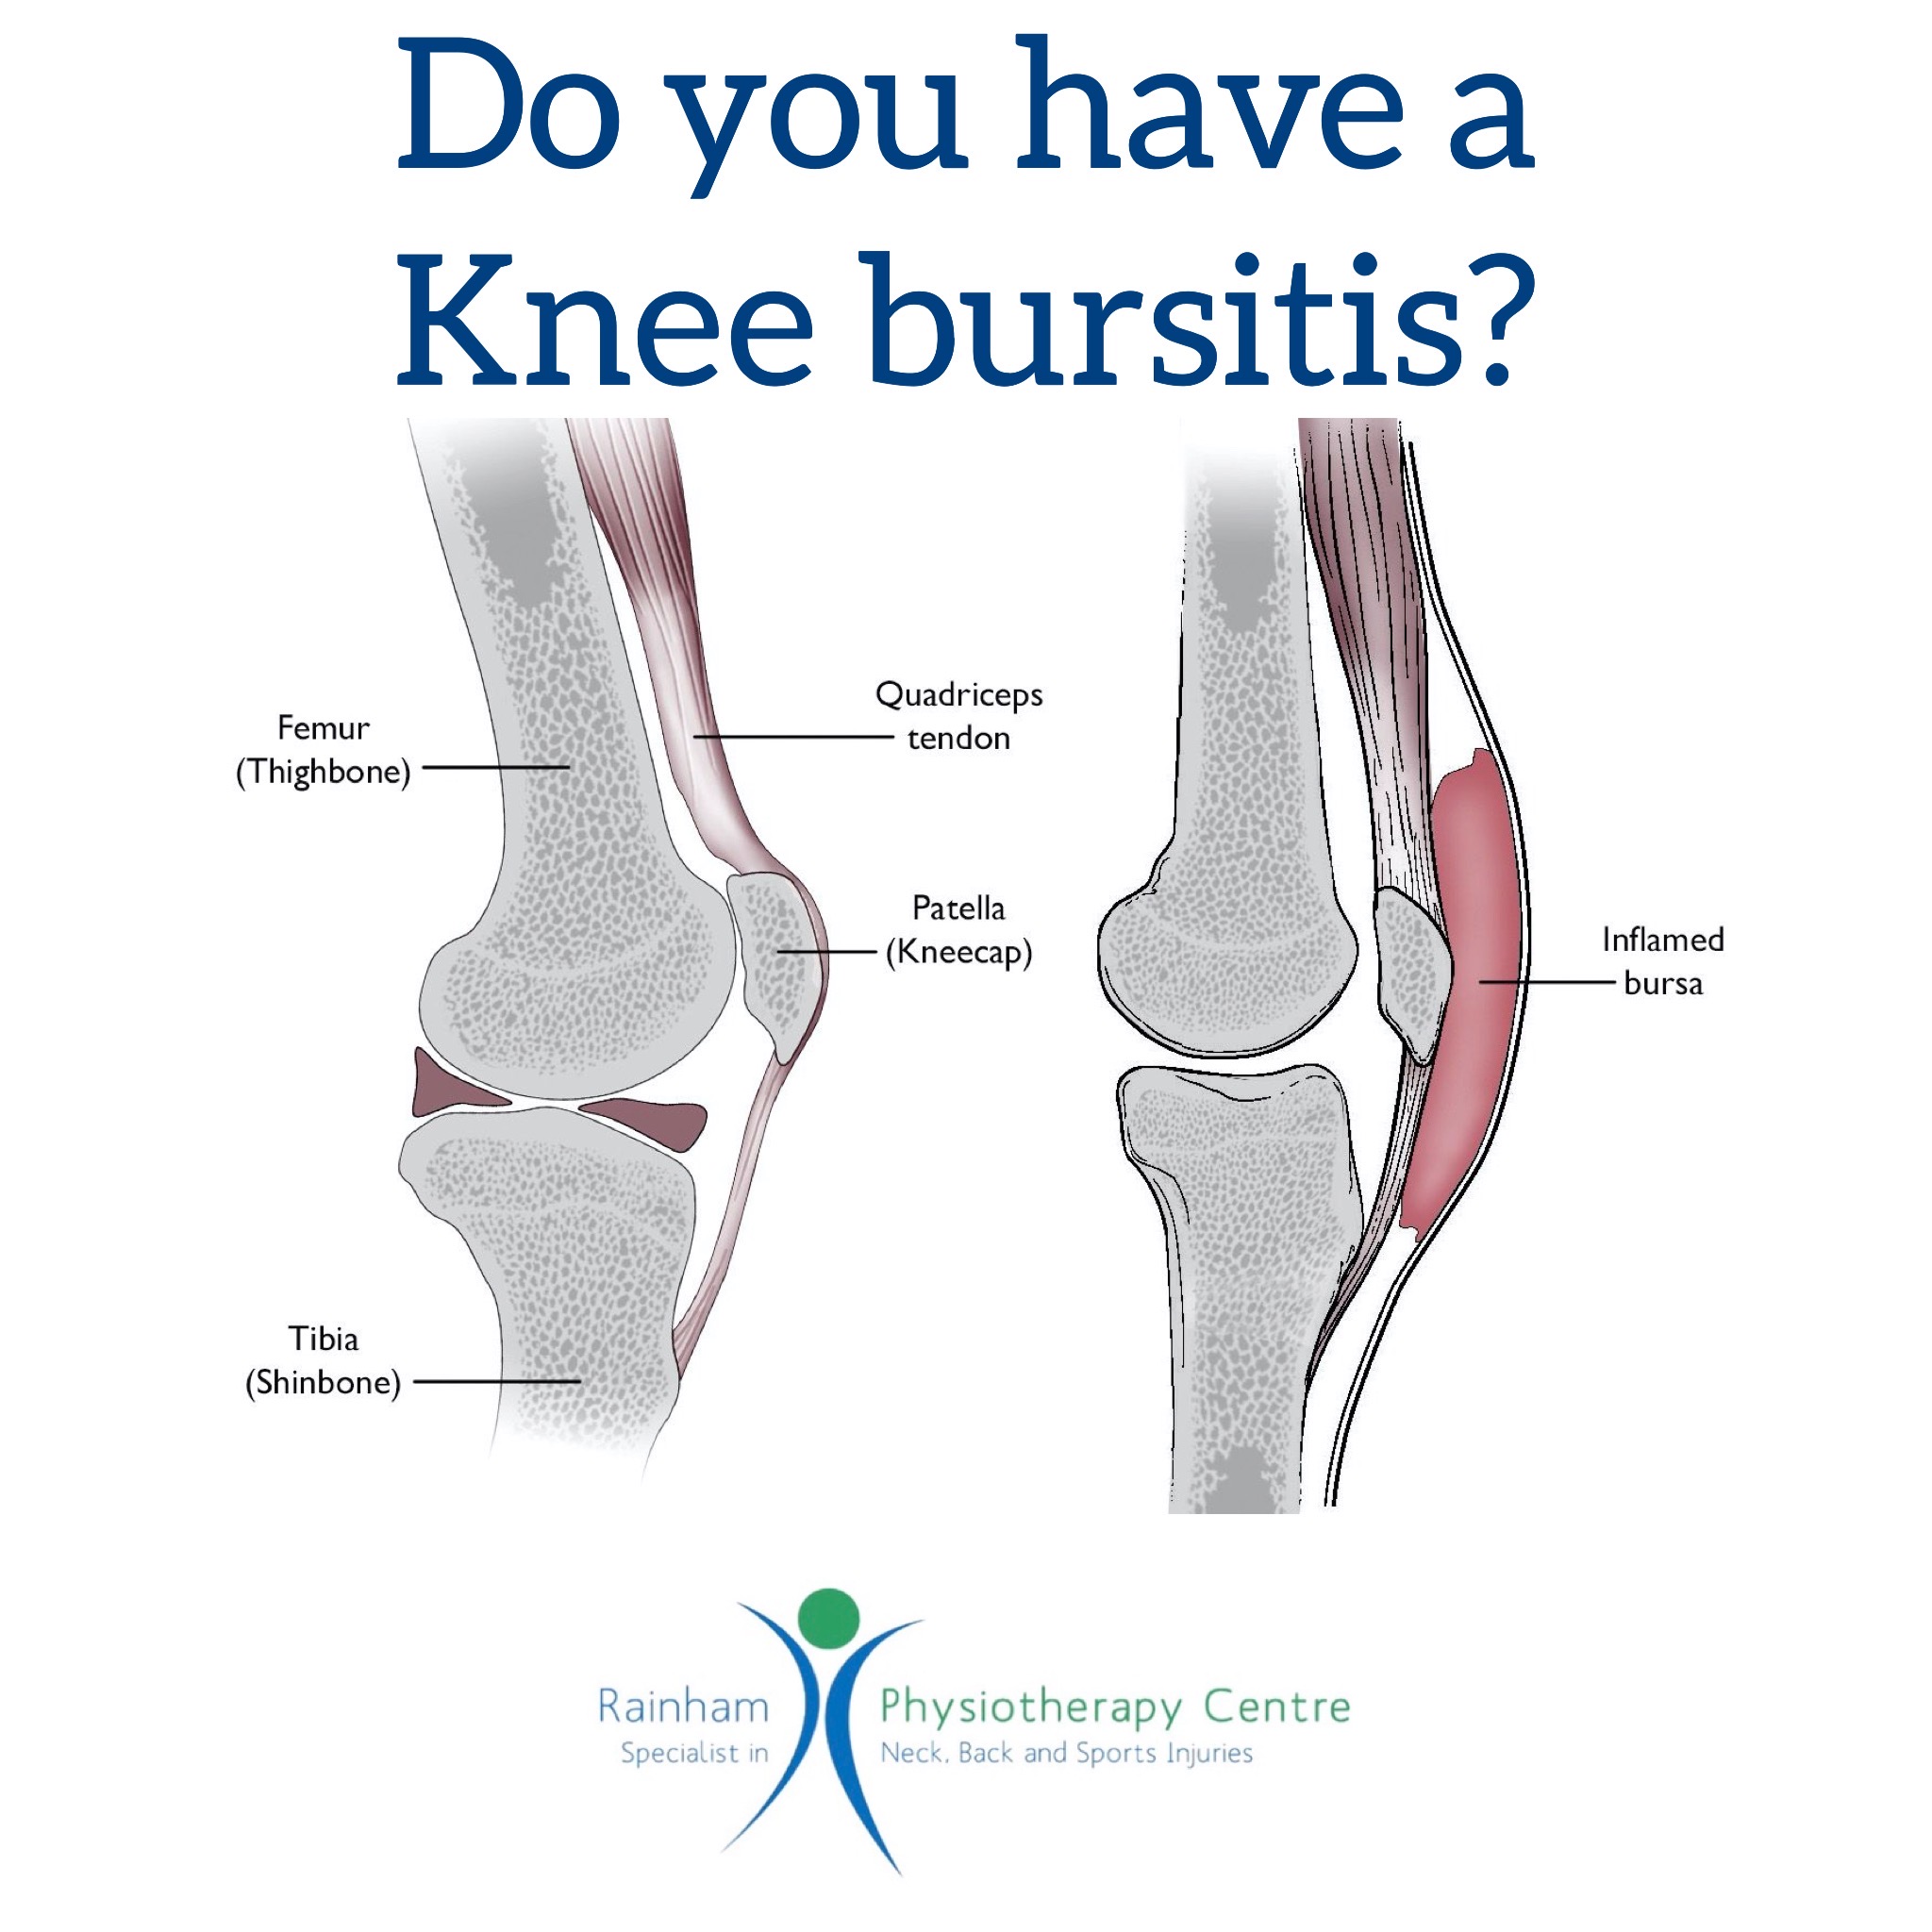 Do you have a knee bursitis?